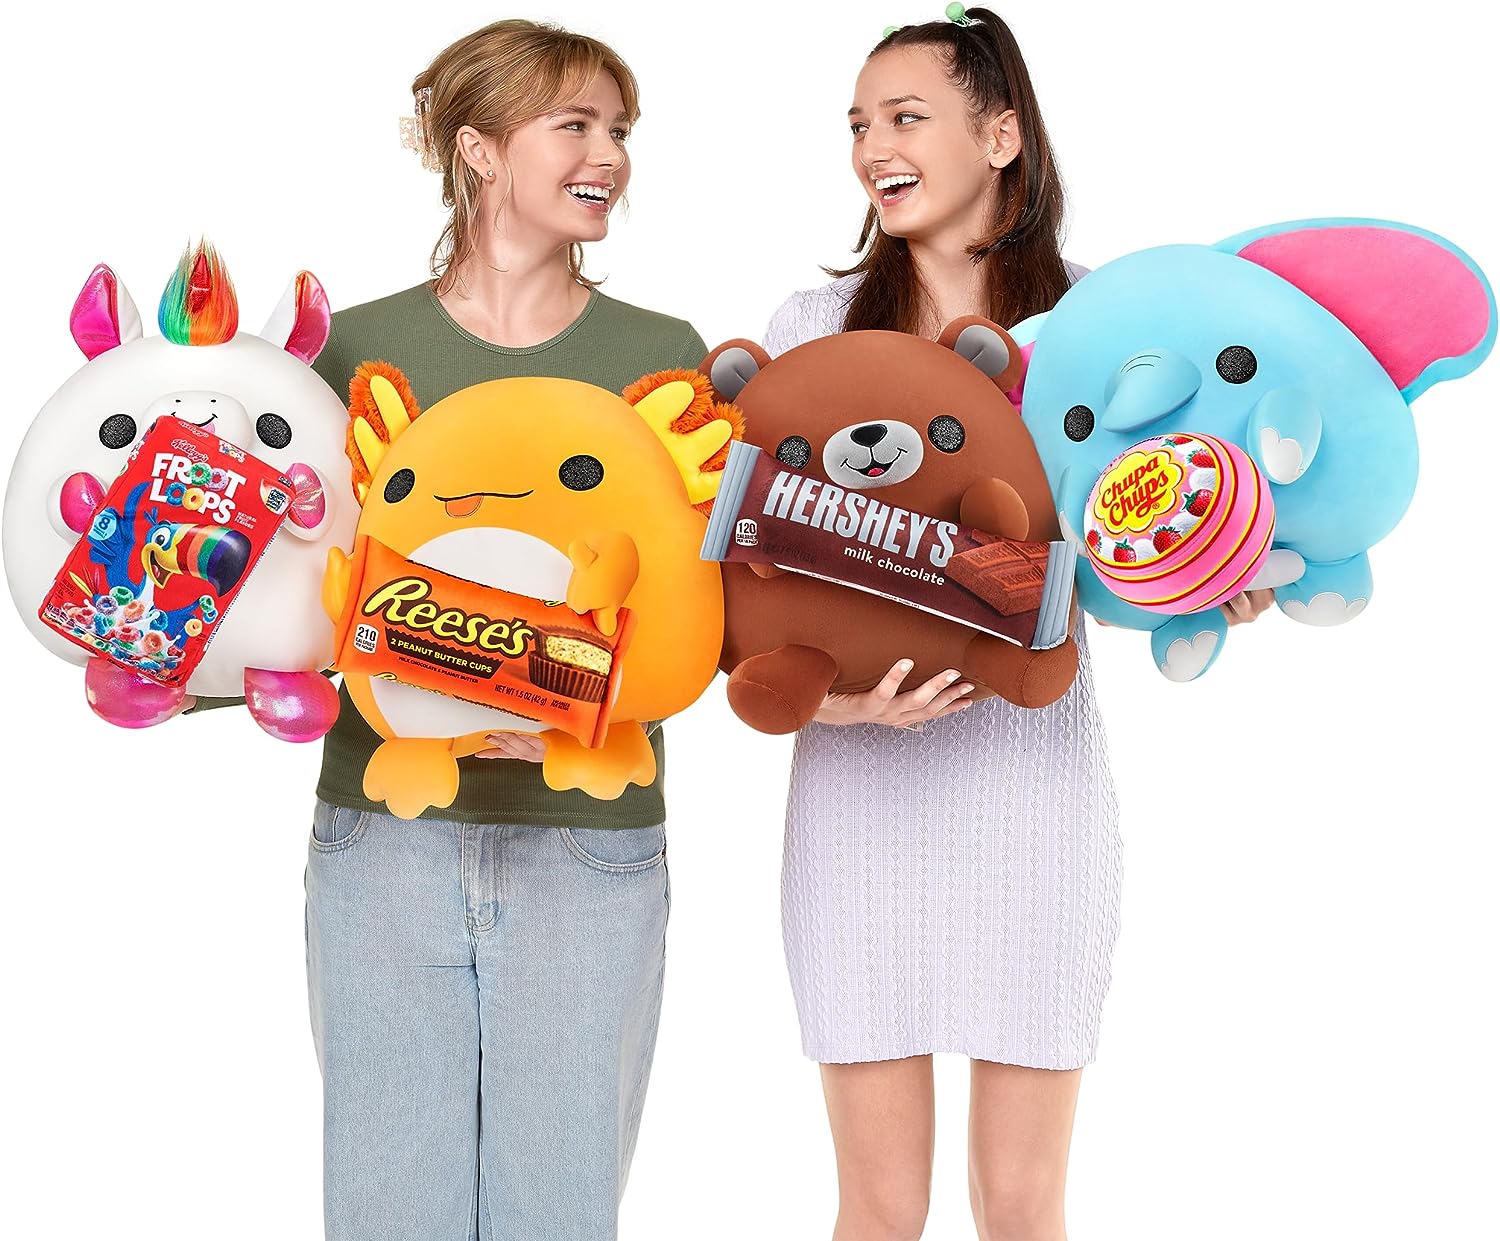 New Surprise Doll Zuru Snackles Super Soft Plush Snack Brand Cute